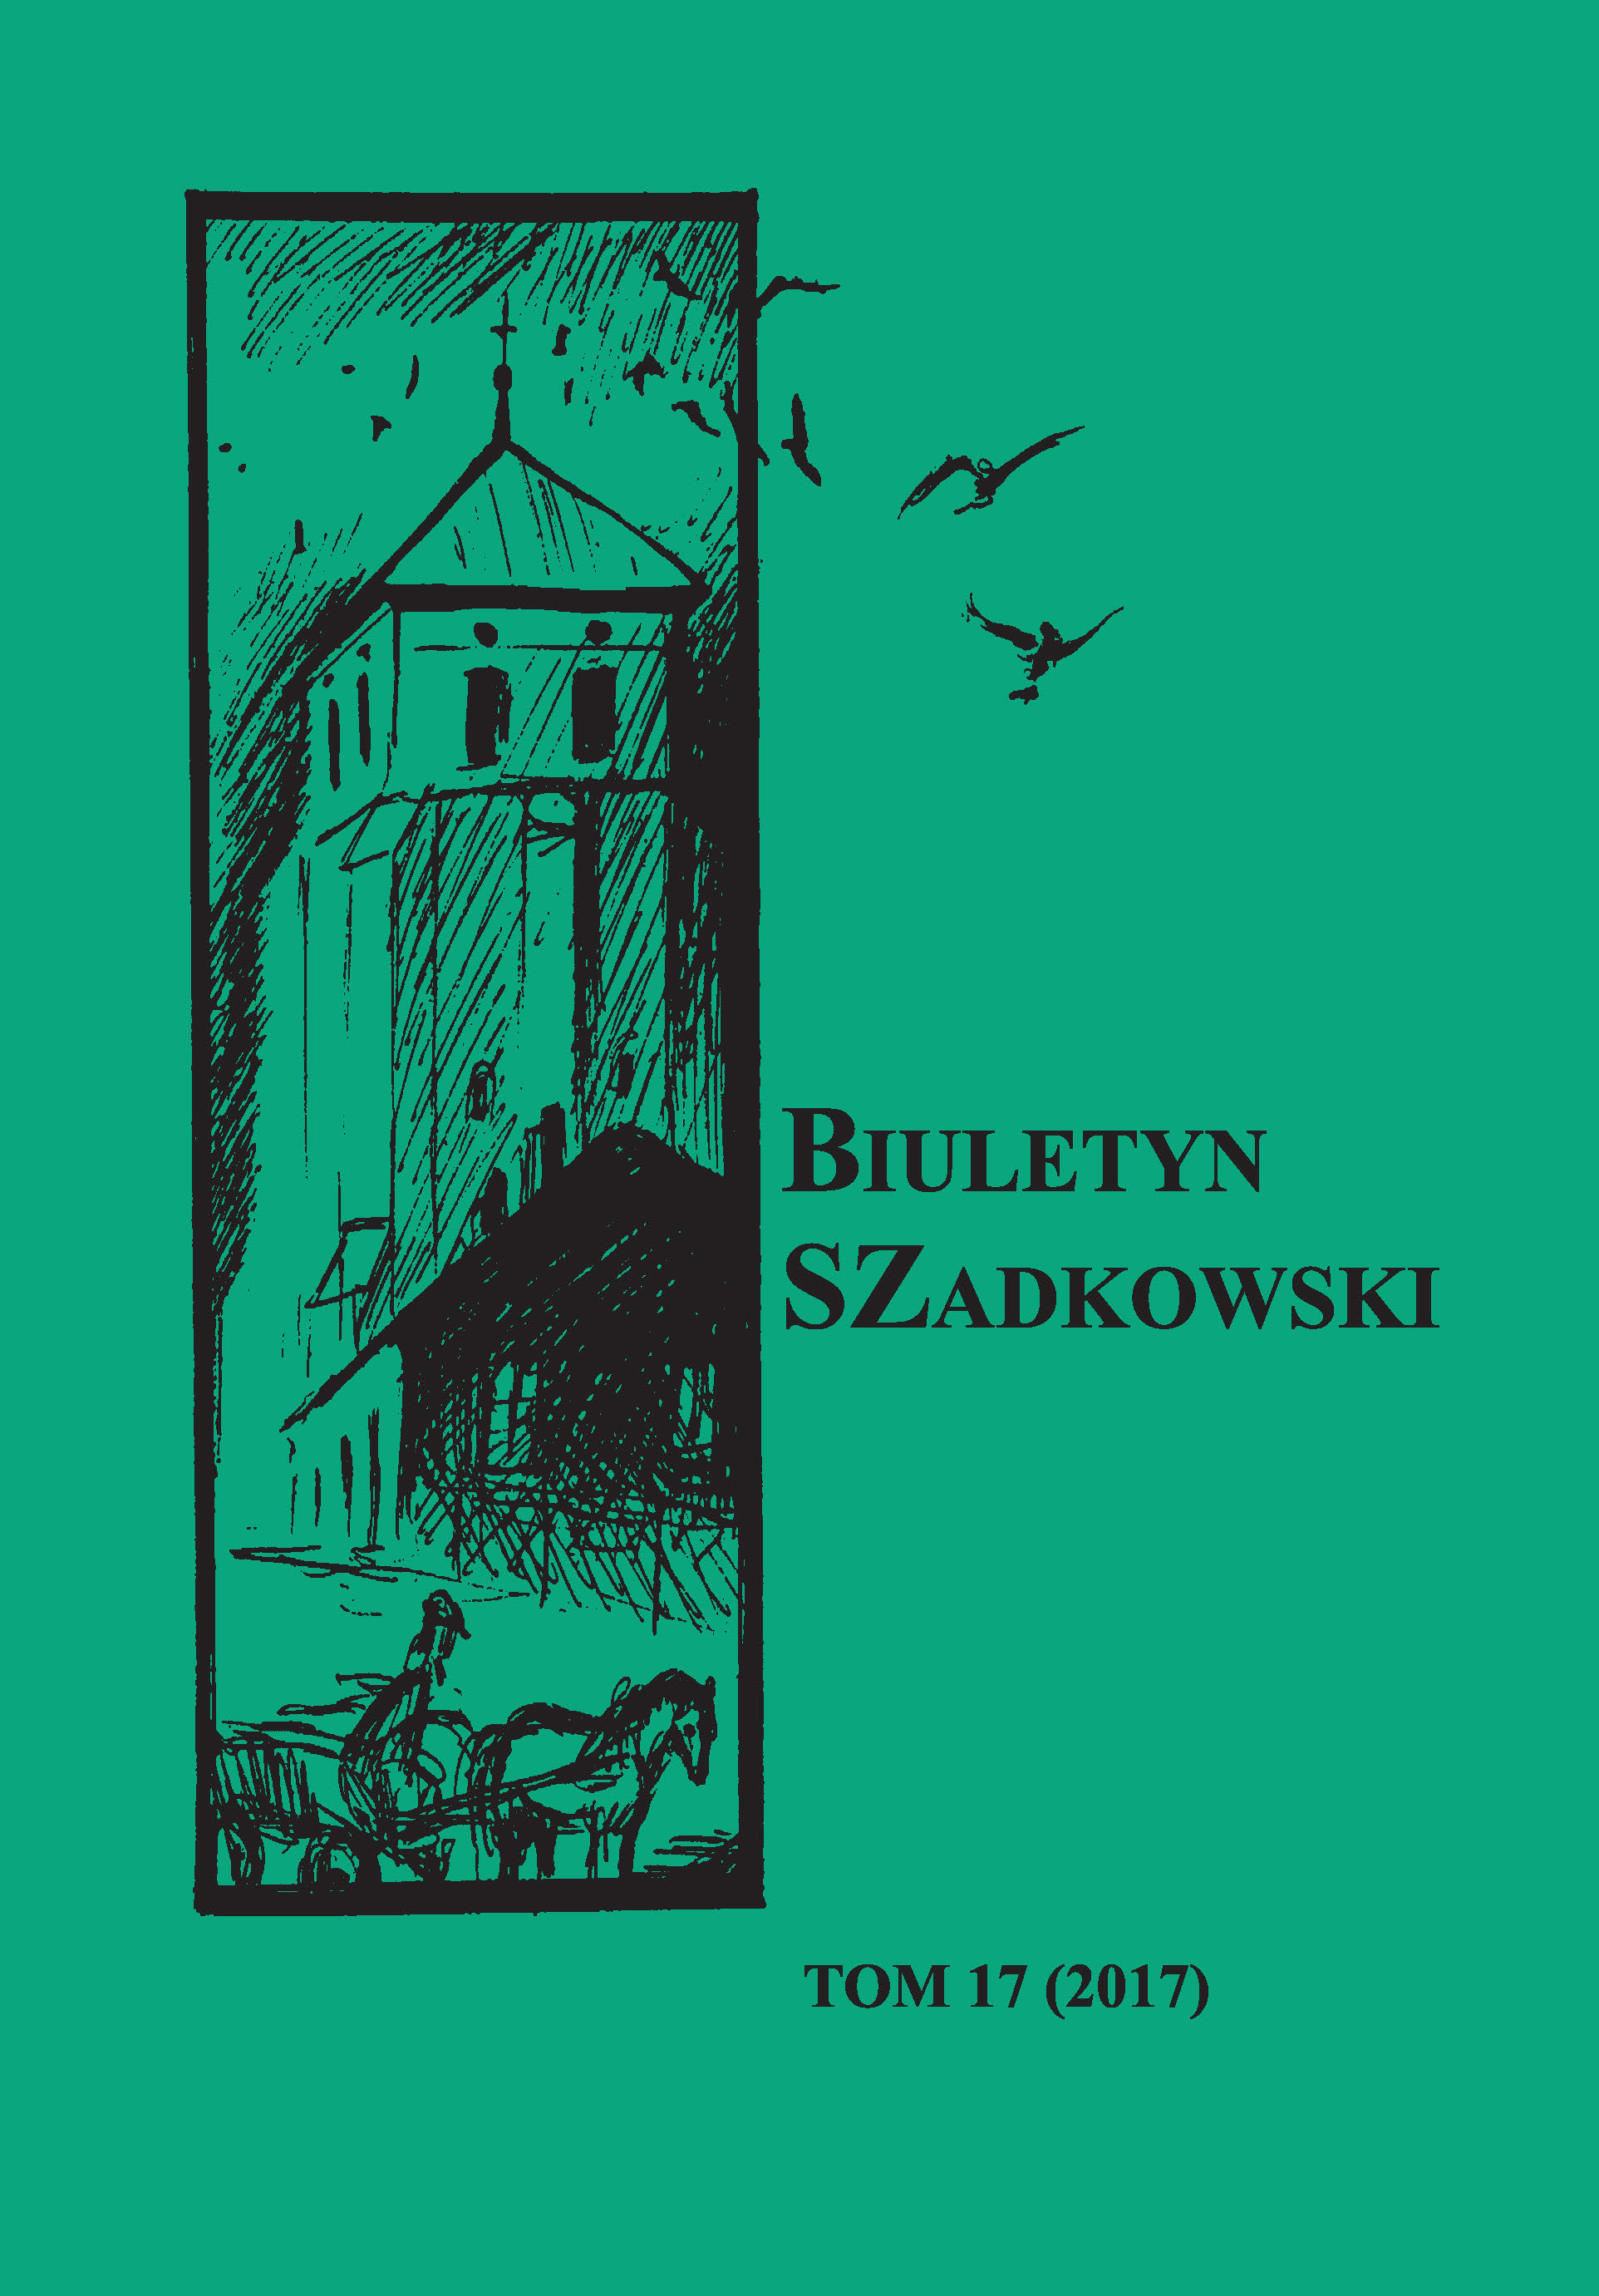 Interview with Mieczysław Szefliński Cover Image